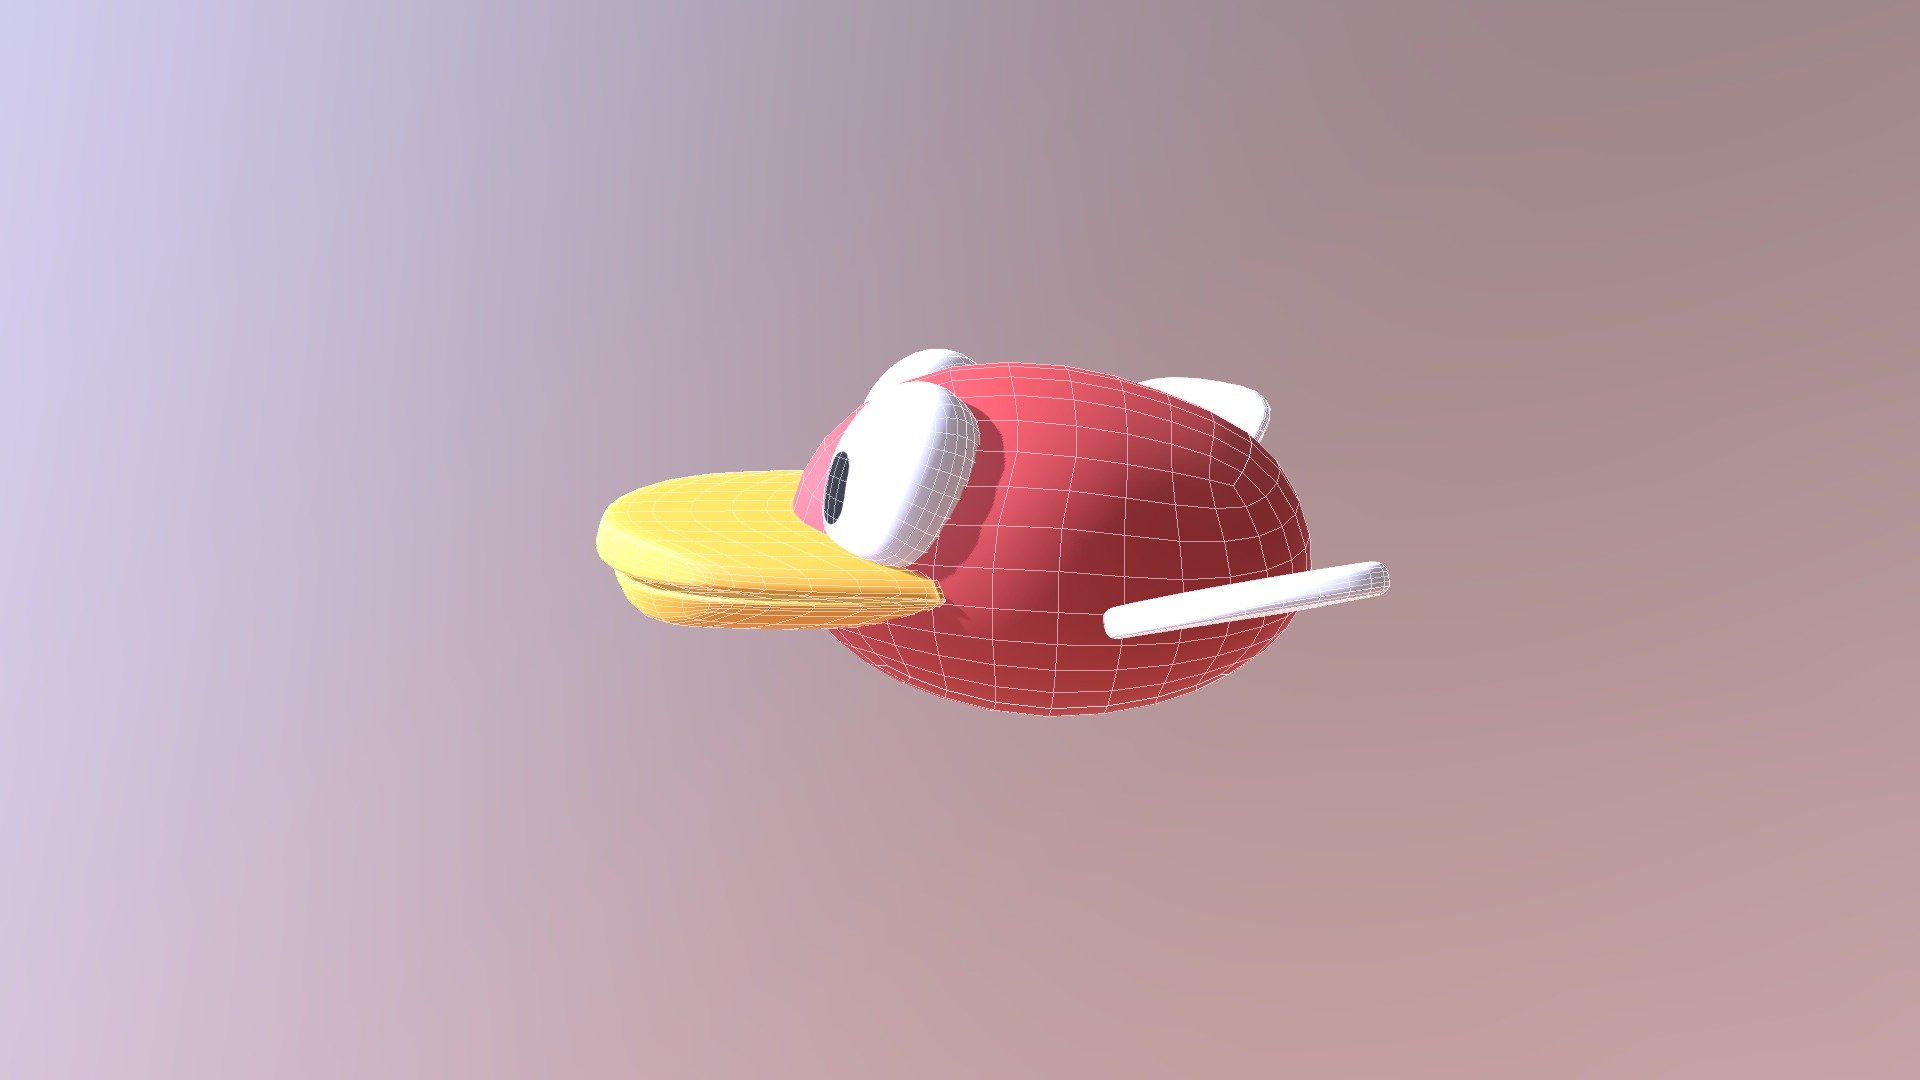 Flappy bird 3d 3D Model